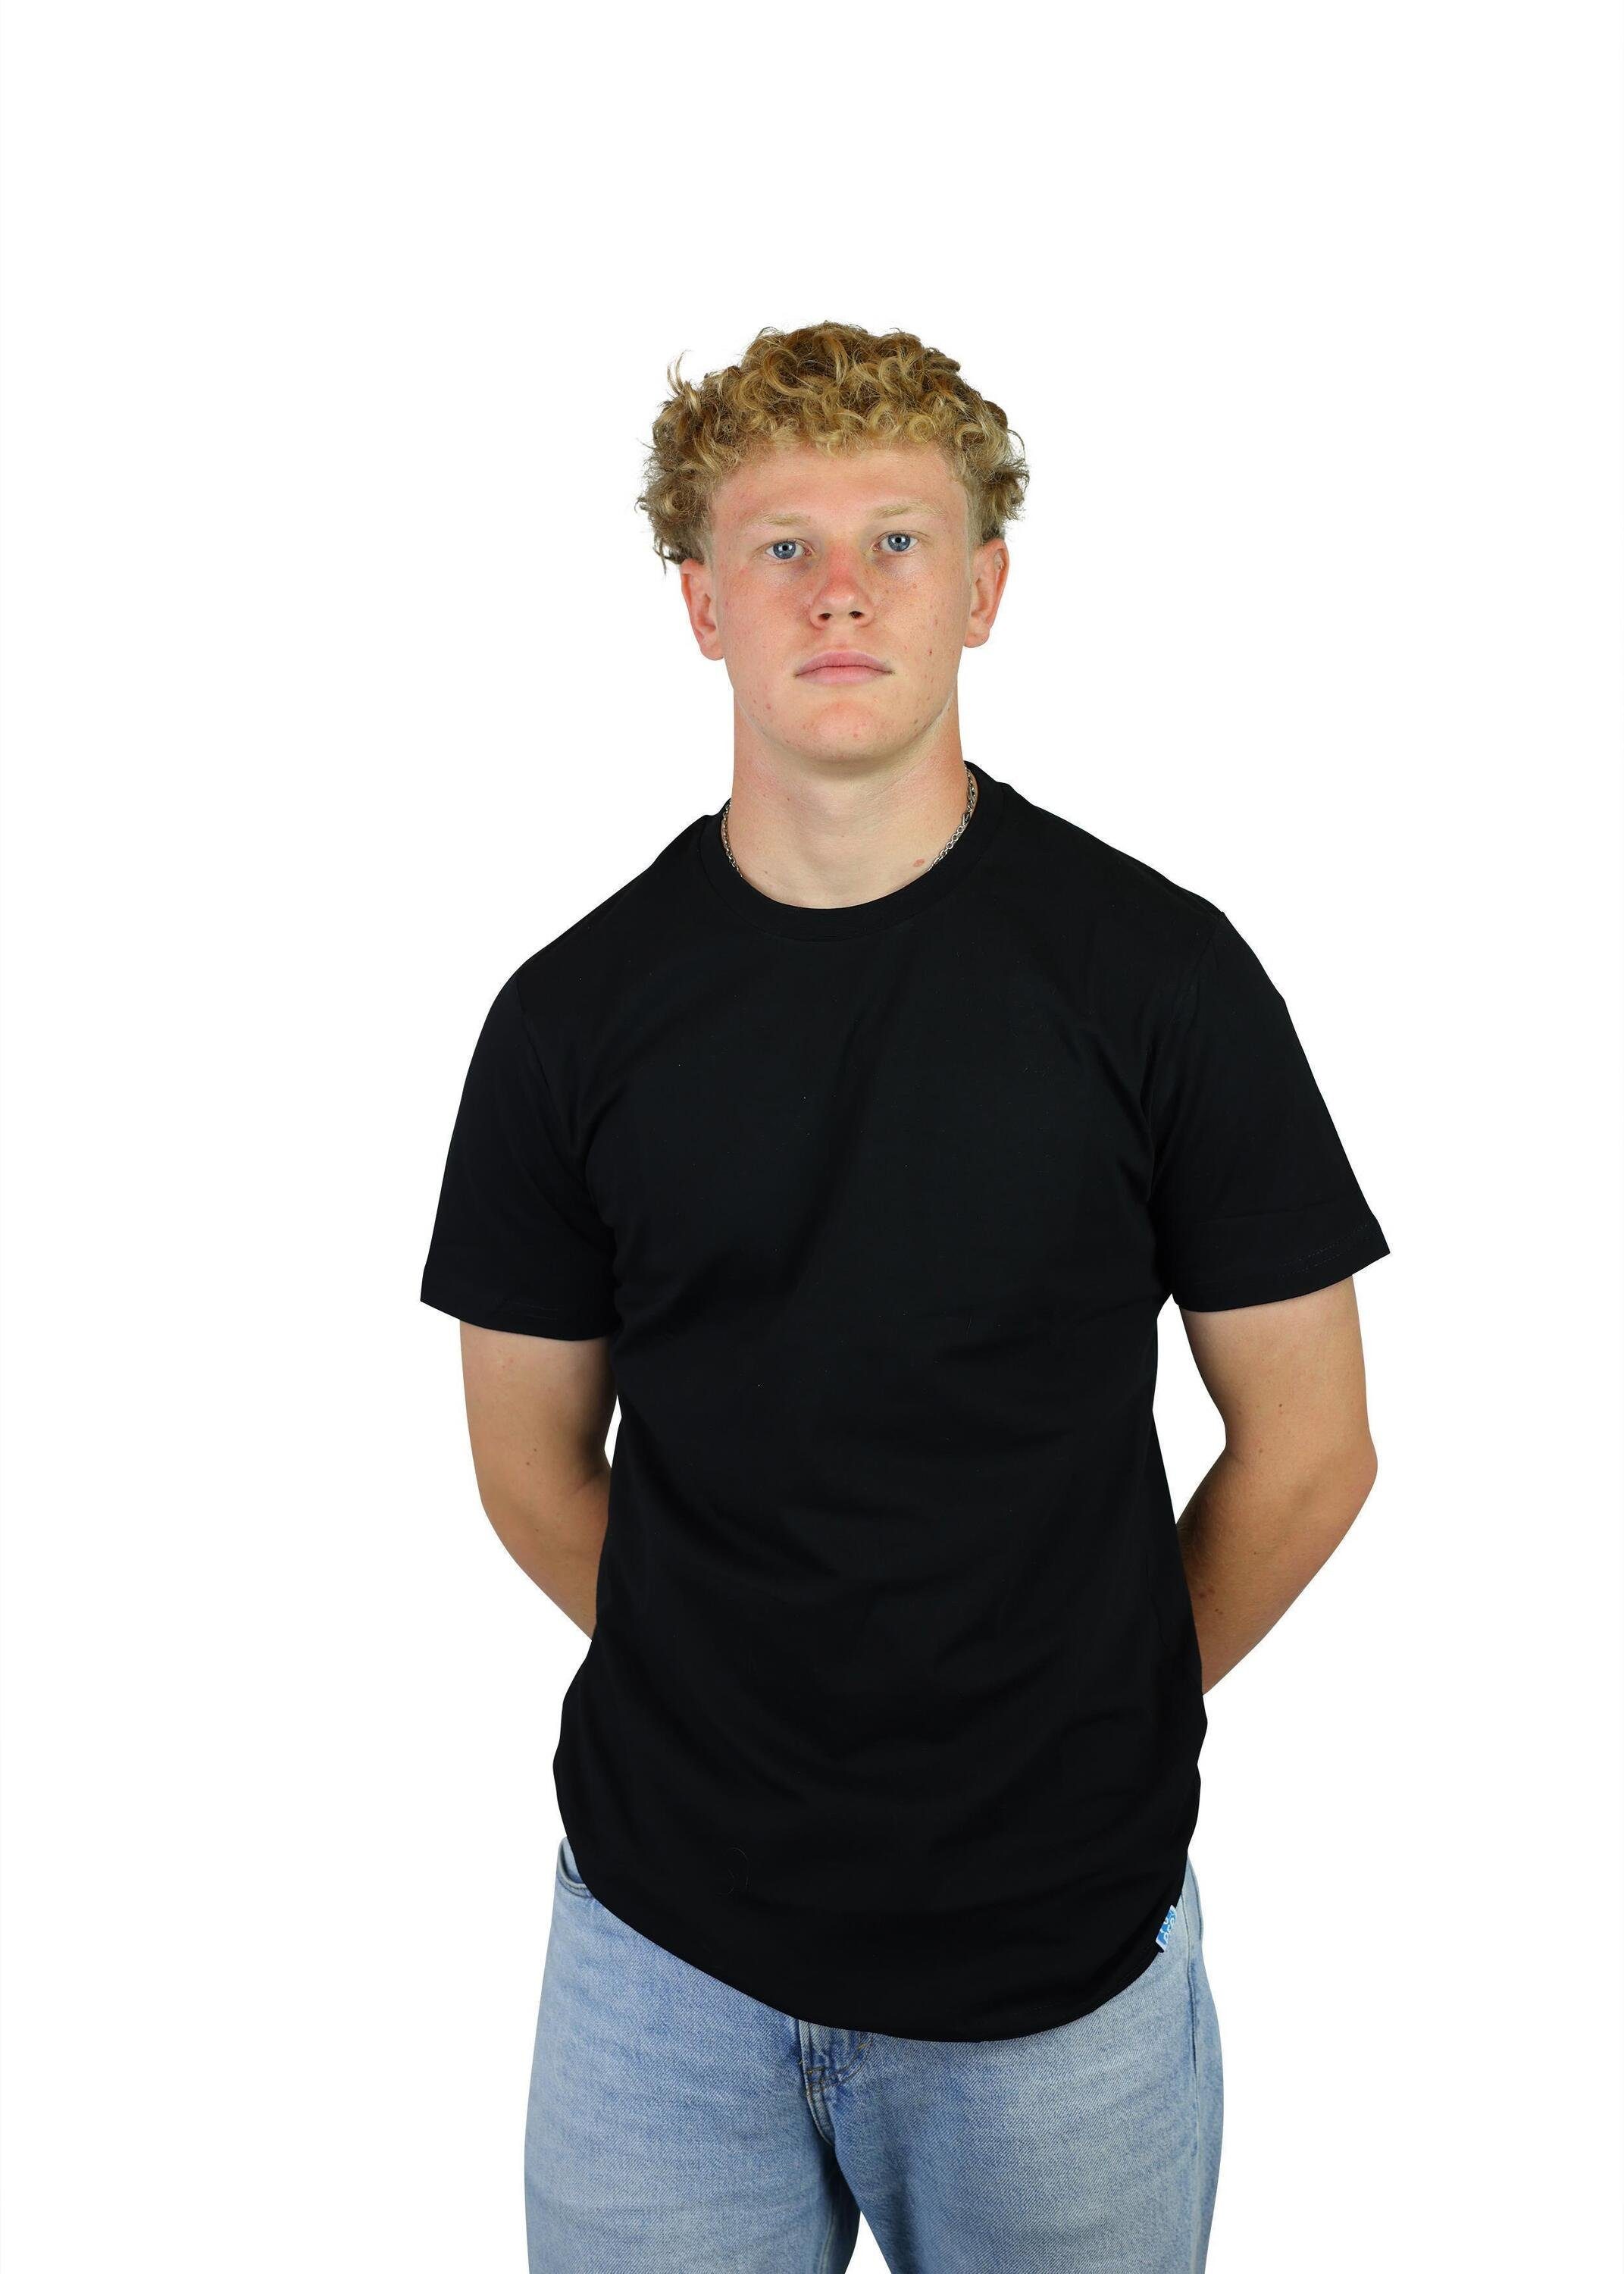 Black aus für FuPer Lifestyle für Herren, T-Shirt Baumwolle Karl und Sport